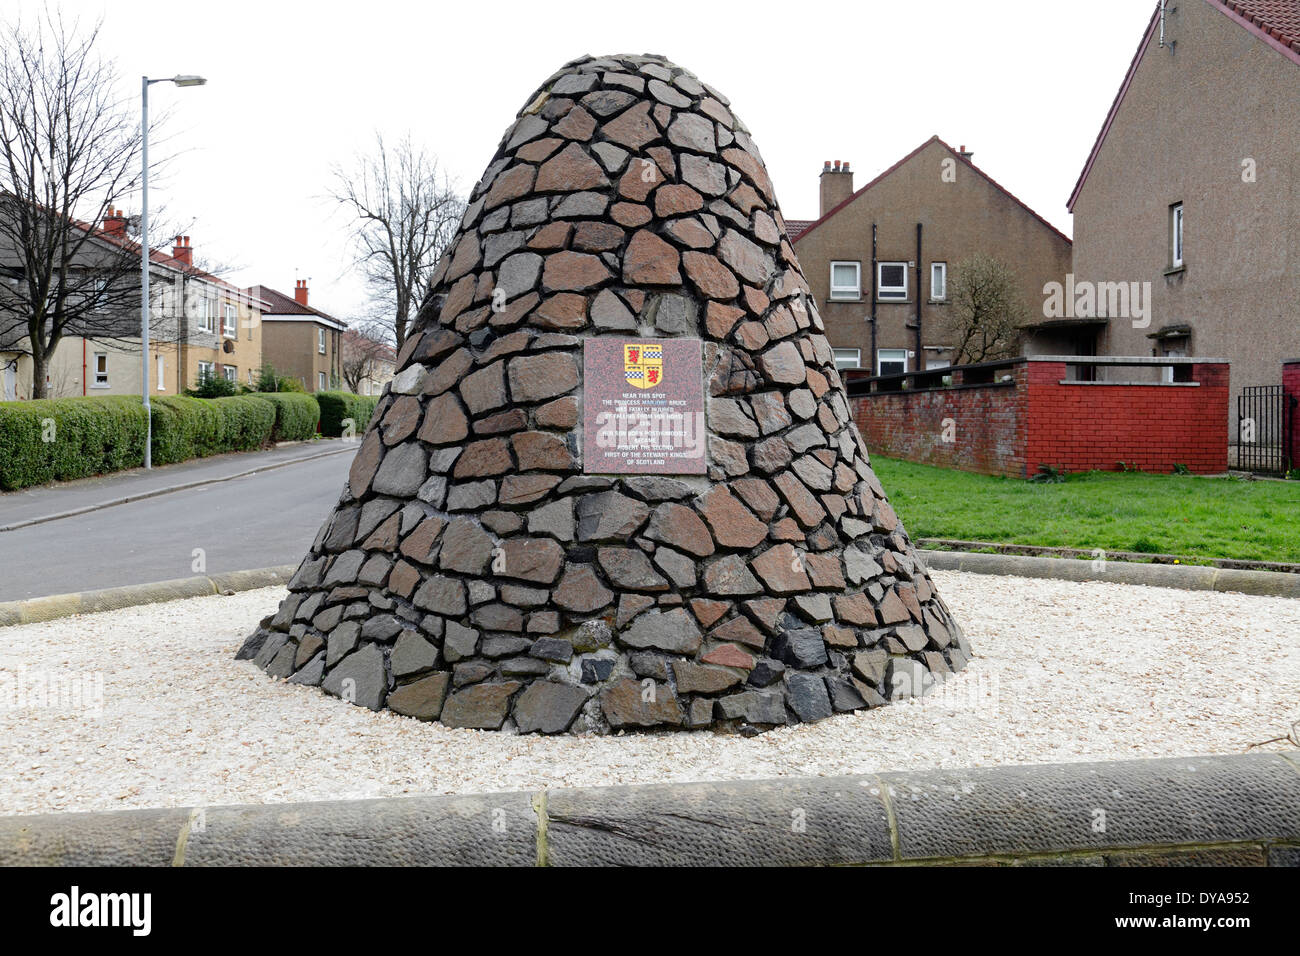 Denkmal für die Prinzessin Marjory Bruce die Mutter von Robert the Bruce, Renfrew Road, Paisley, Schottland, Großbritannien. Mehr Infos in der Beschreibung Stockfoto